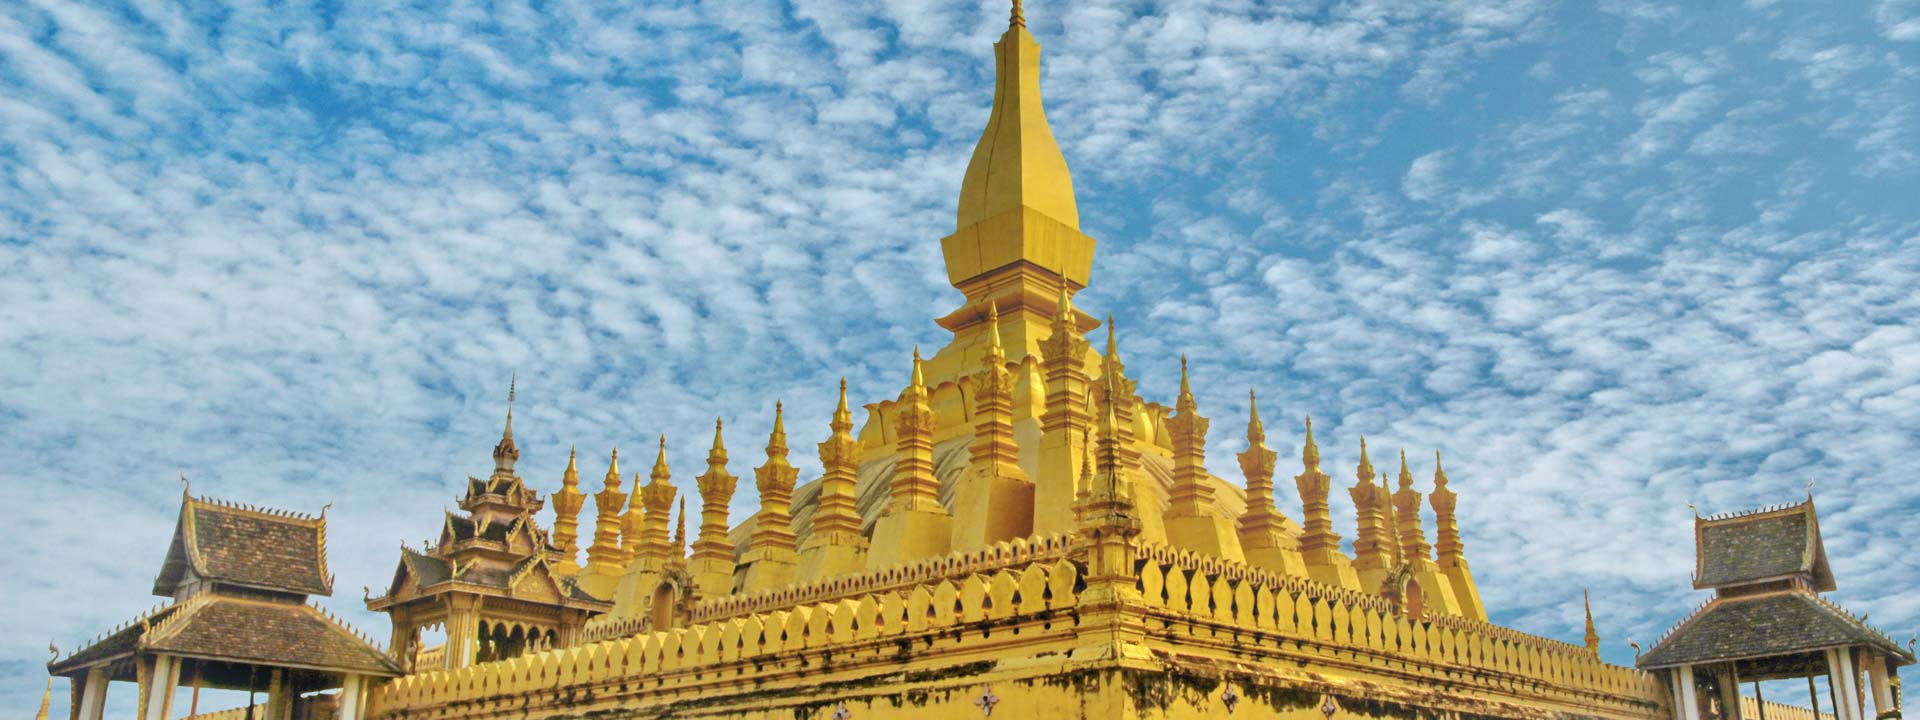 Descubriendo el Patrimonio Mundial Luang Prabang 4 días